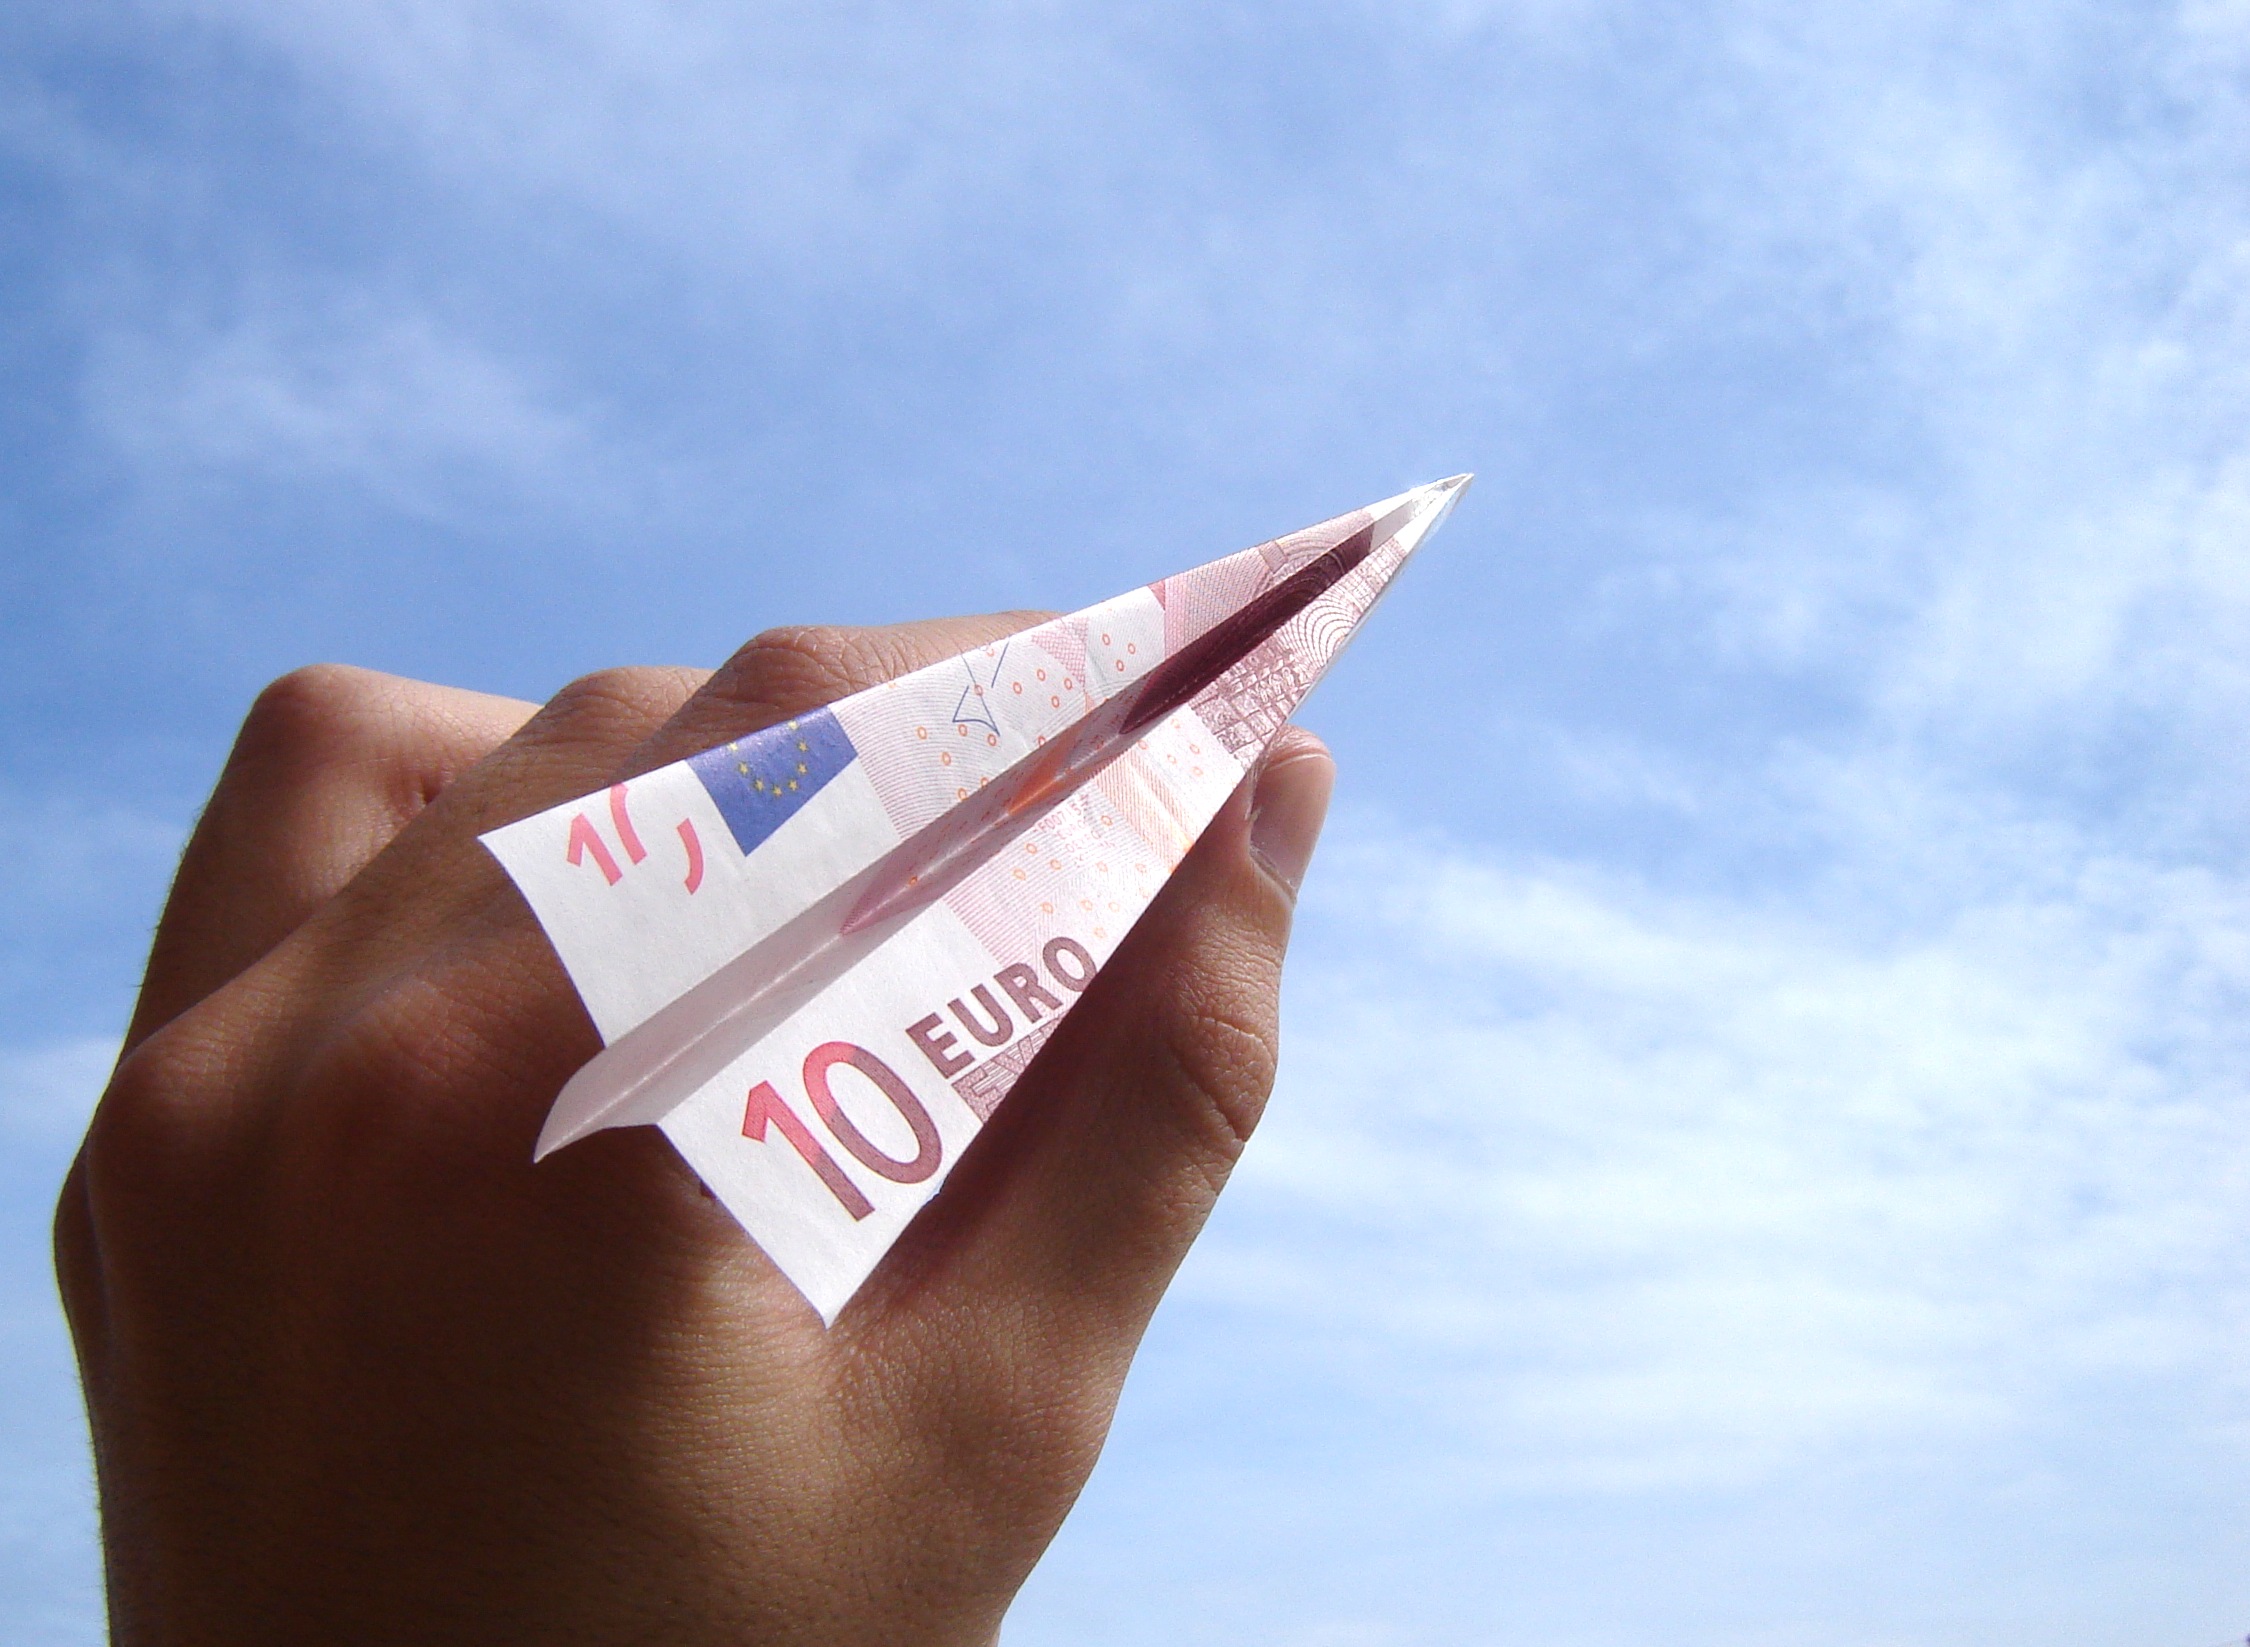 L'argent dans les expressions françaises : les français et l'argent